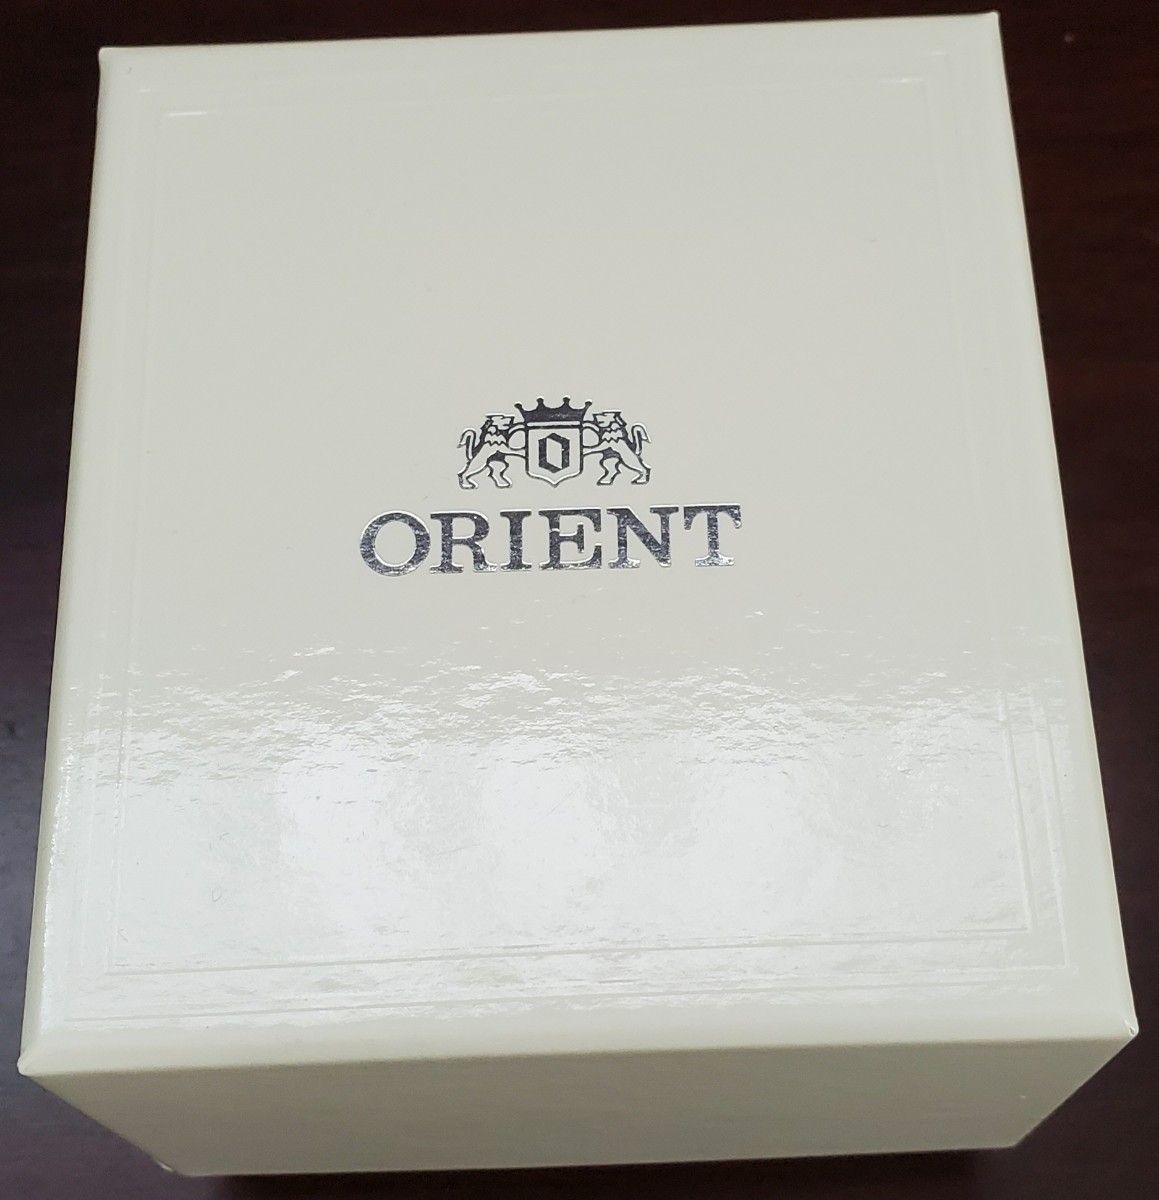 【 美品 】ORIENT オリエント クロノグラフ クォーツ 腕時計 メタルベルト ネイビー カラー